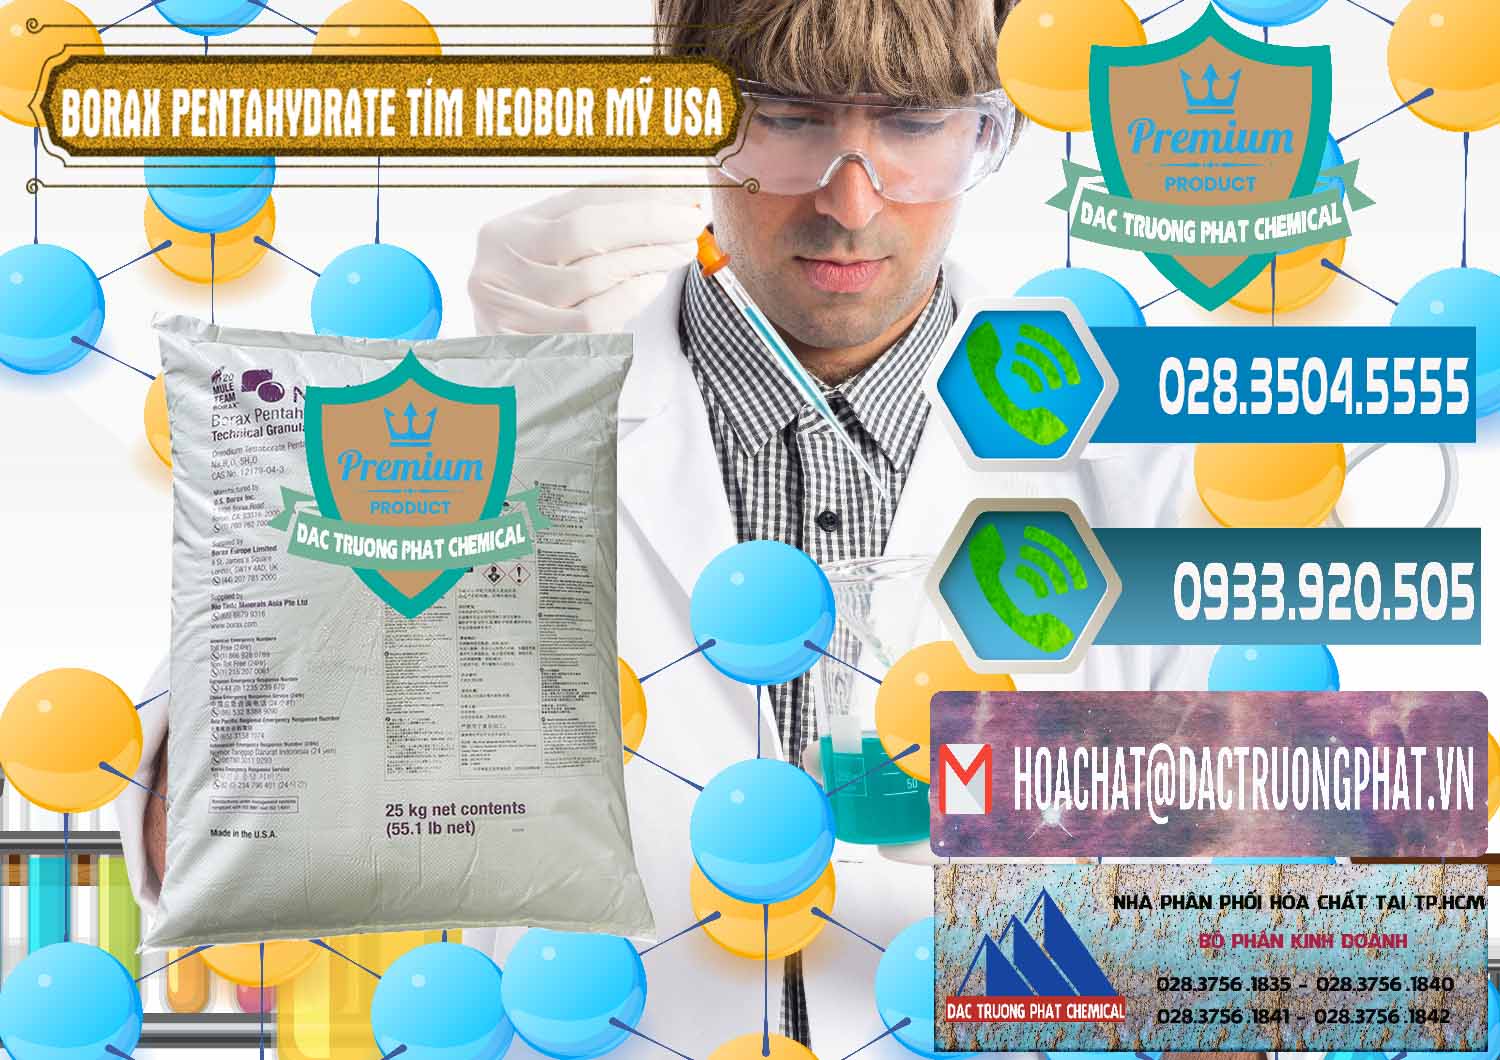 Đơn vị chuyên cung ứng _ bán Borax Pentahydrate Bao Tím Neobor TG Mỹ Usa - 0277 - Nhà phân phối & cung cấp hóa chất tại TP.HCM - congtyhoachat.net